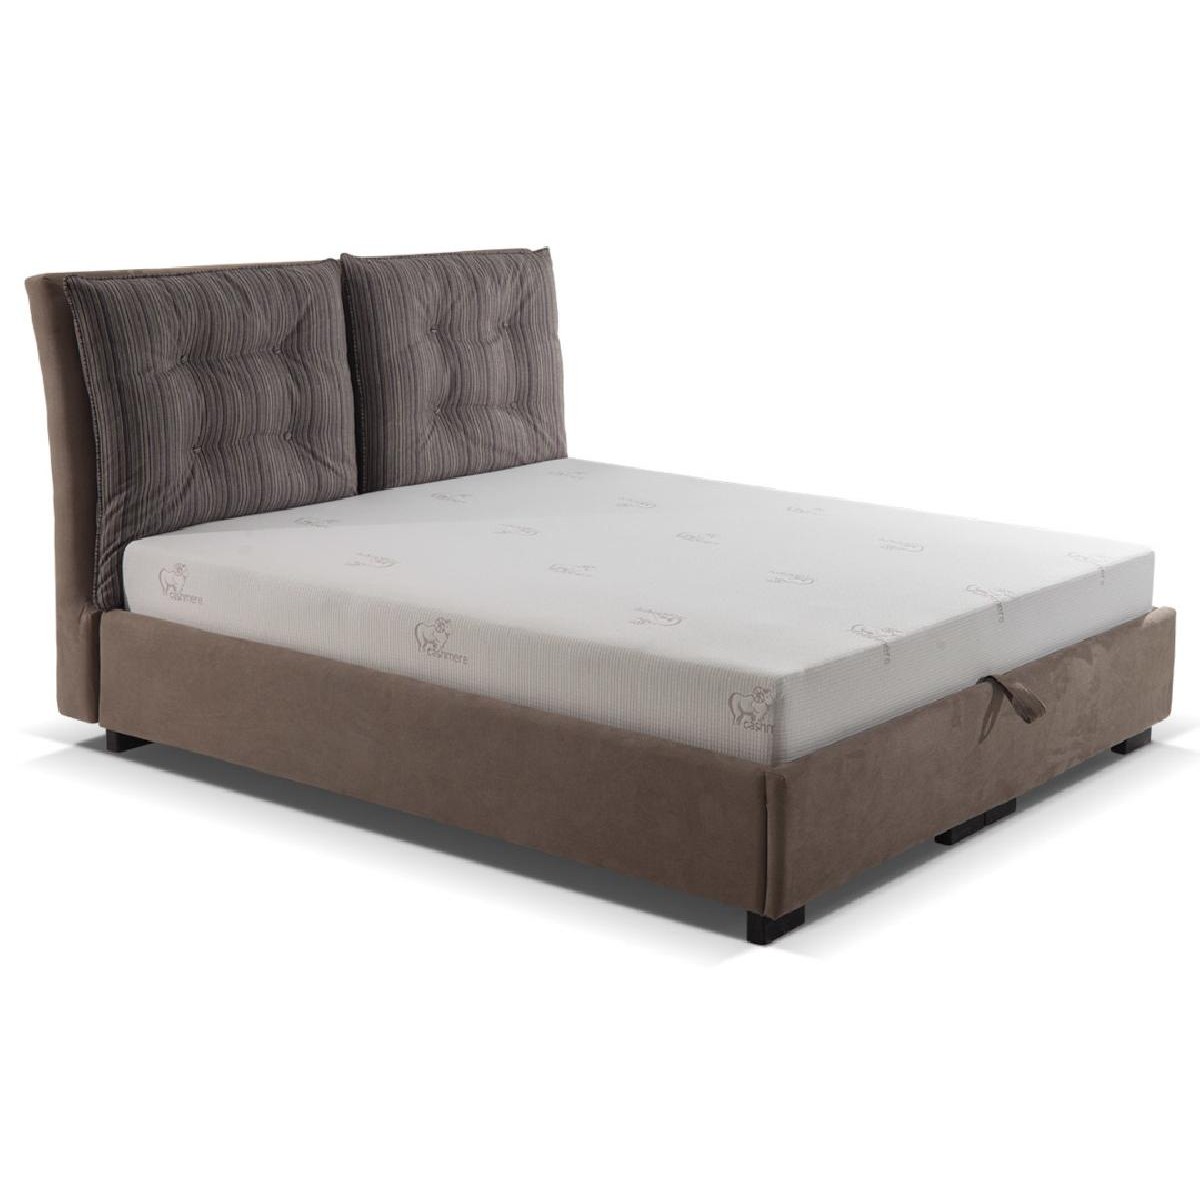 Κρεβάτι με αποθηκευτικό χώρο και ενσωματωμένο στρώμα VM-Arizona 160